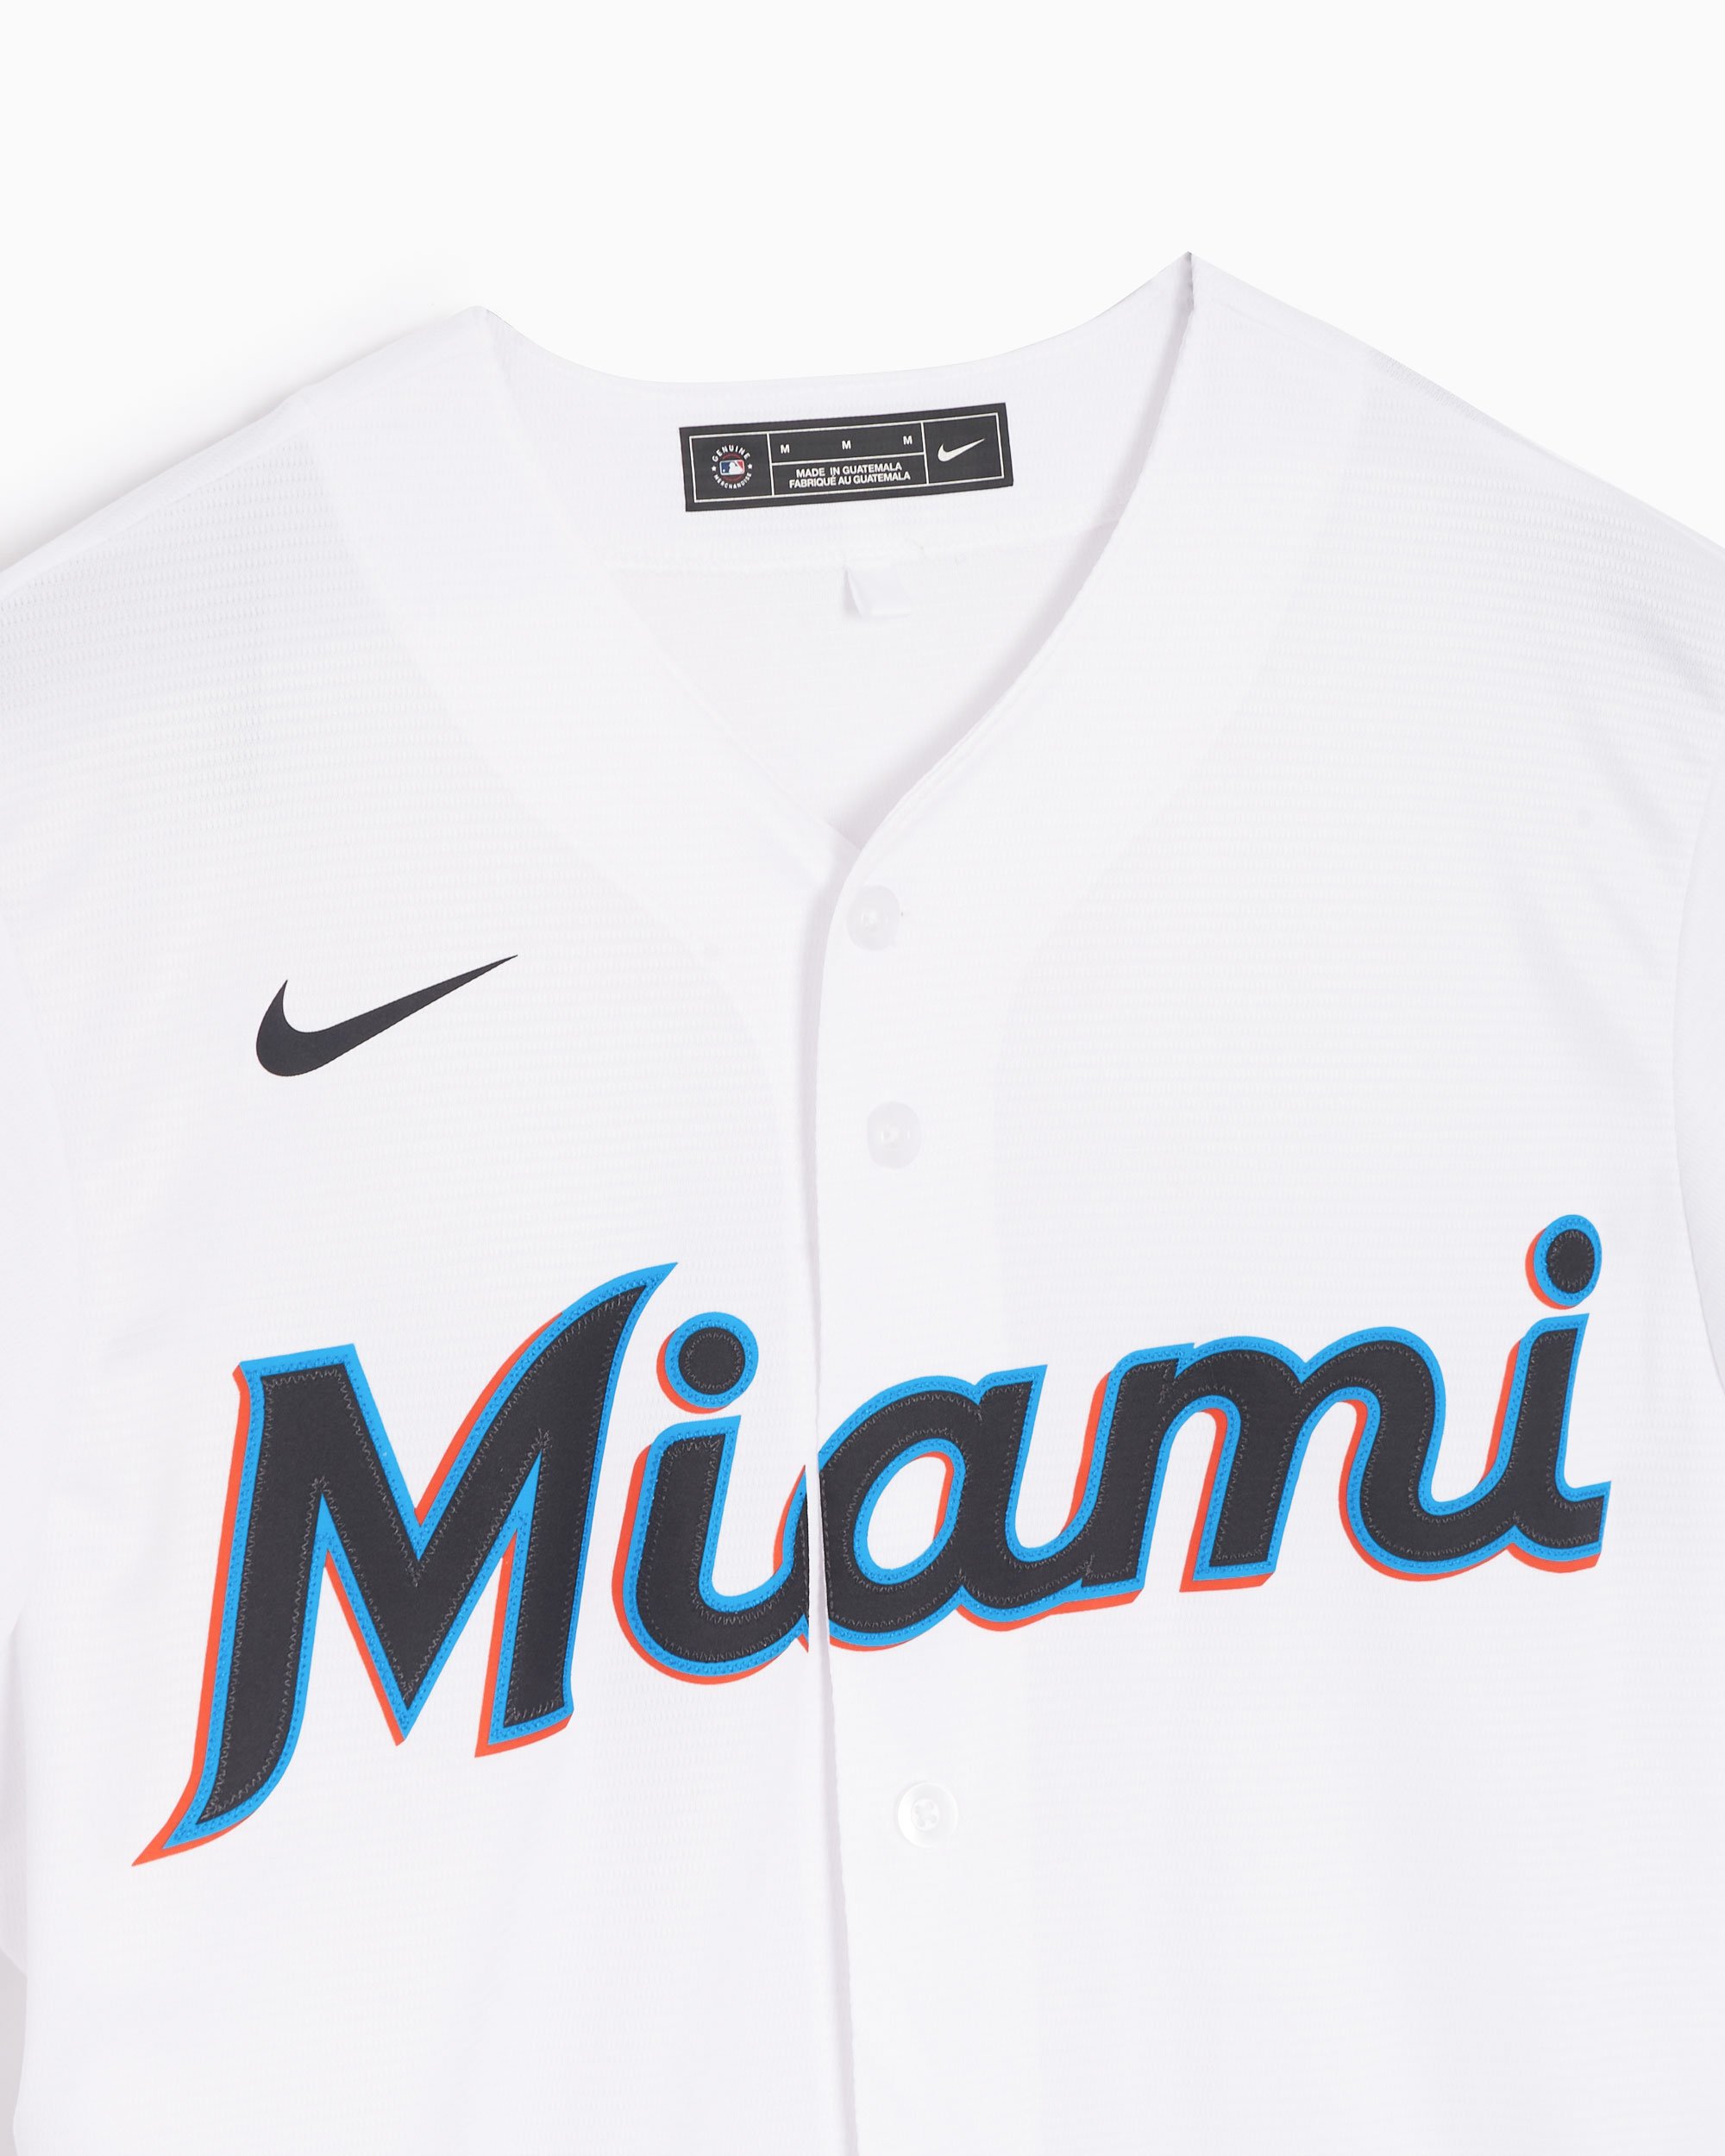 Buy Miami Marlins Replica Jersey